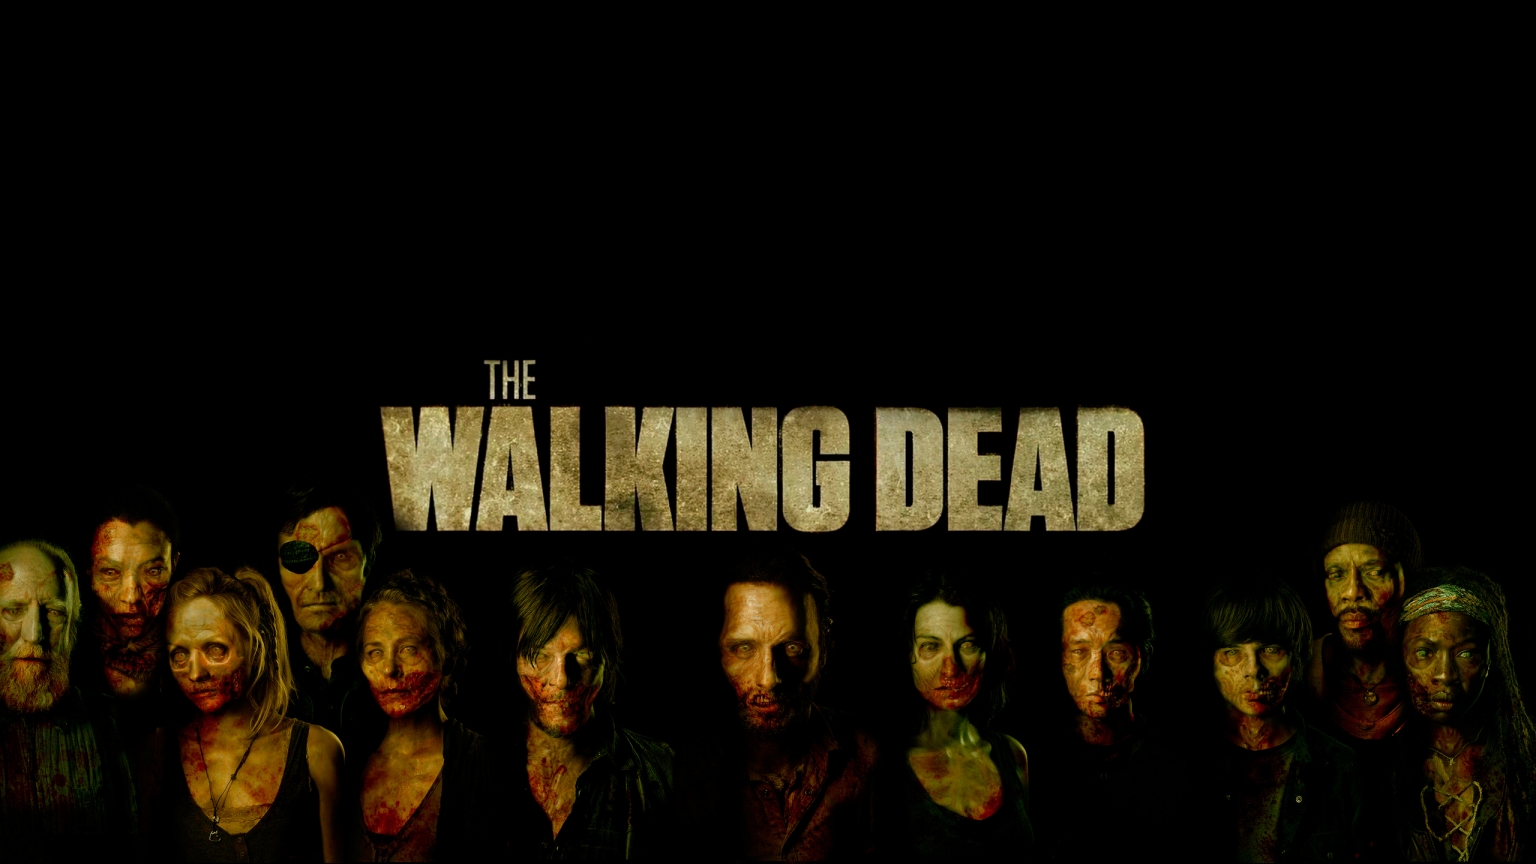 The Walking Dead Poster Art  for 1536 x 864 HDTV resolution